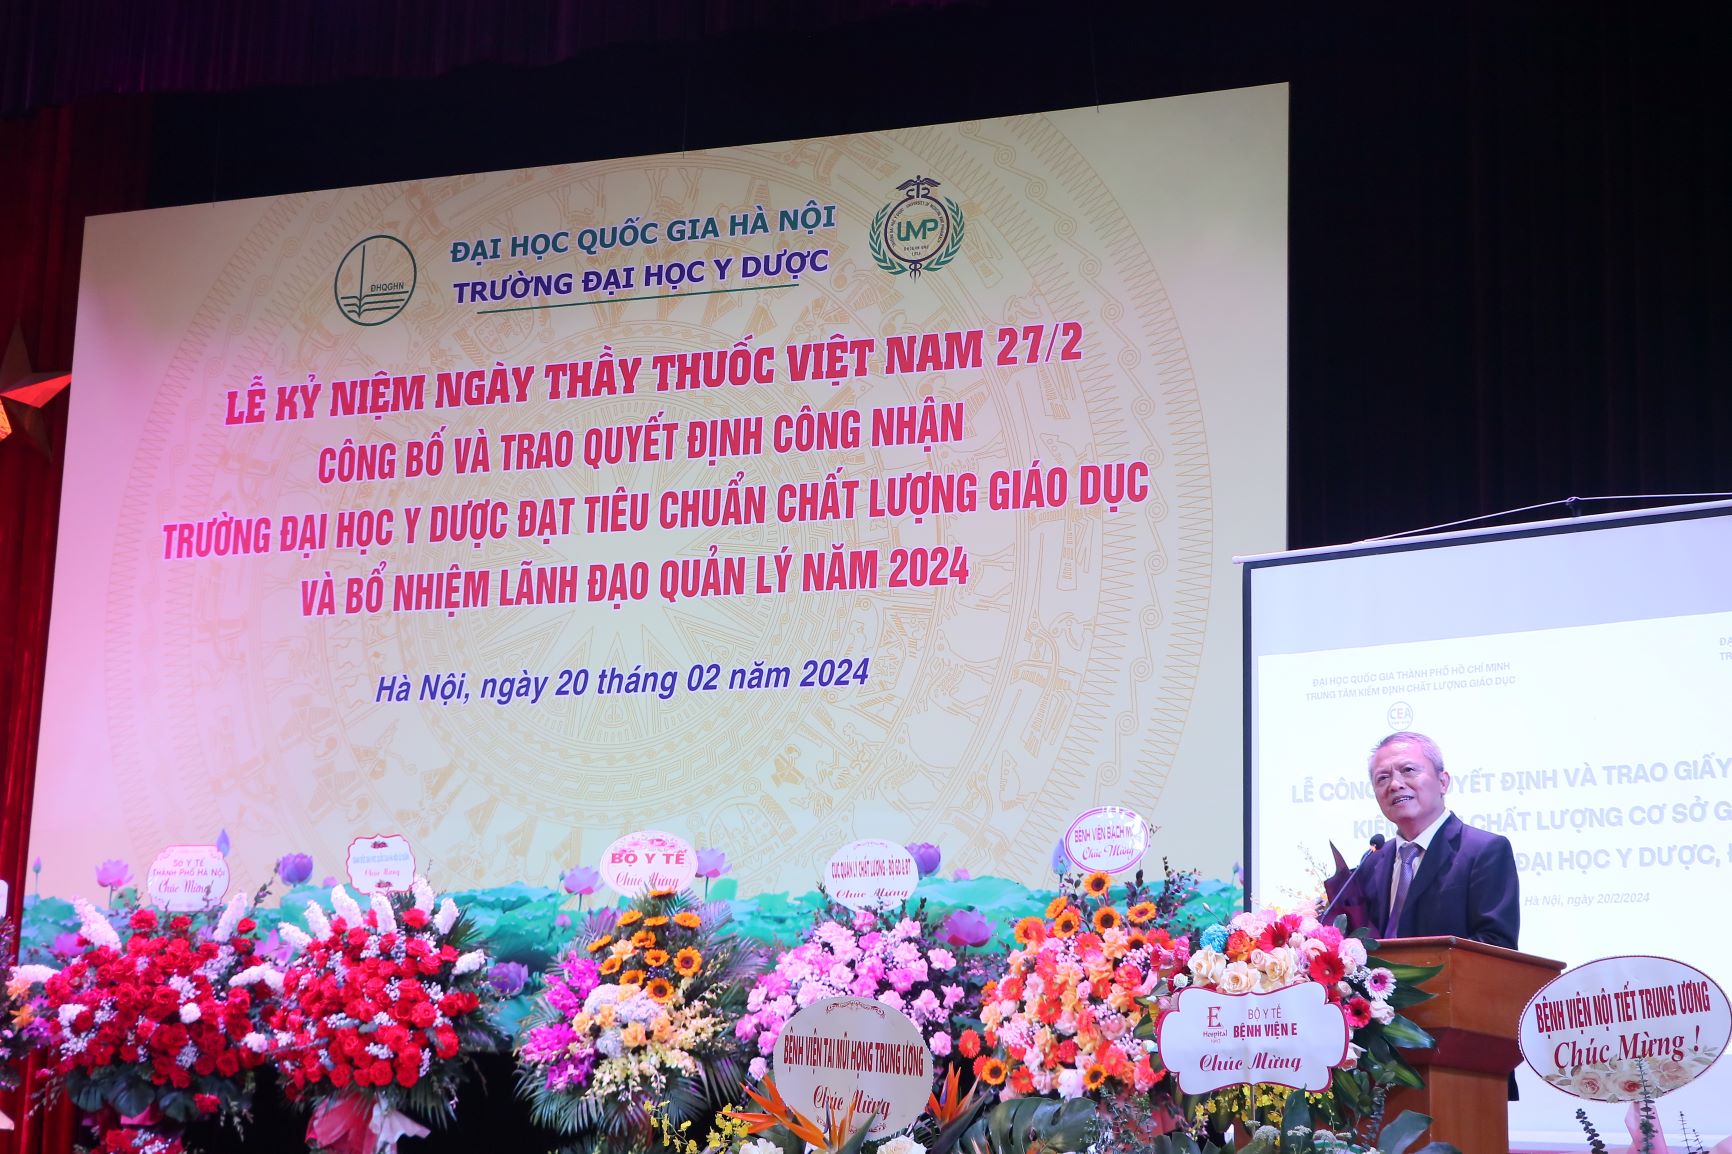 Lễ kỷ niệm Ngày thầy thuốc Việt Nam 27/2, công bố và trao quyết định công nhận Trường Đại học Y Dược đạt tiêu chuẩn chất lượng giáo dục và bổ nhiệm lãnh đạo quản lý năm 2024